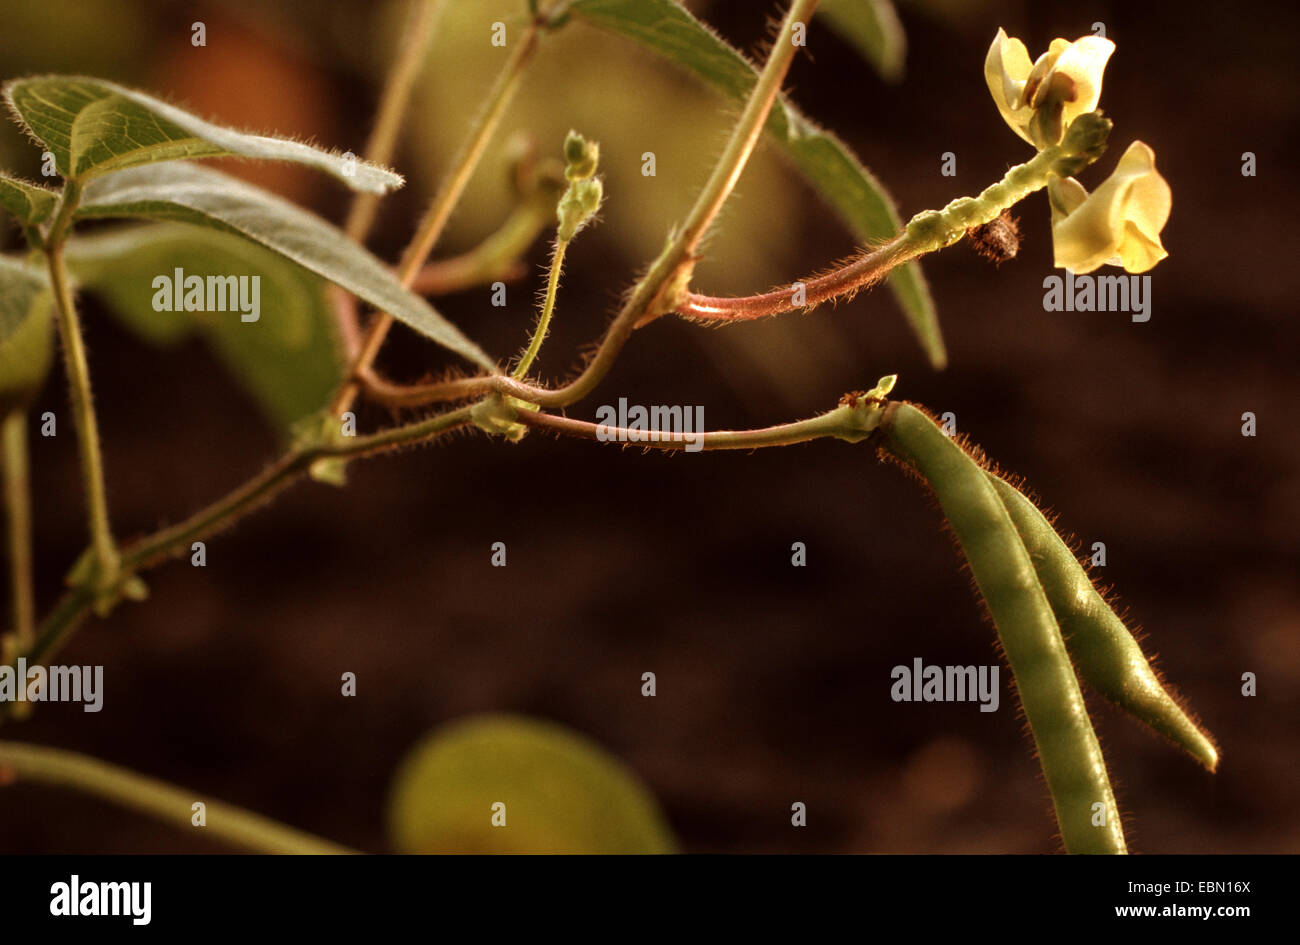 Les haricots mungo, urdi aux haricots noirs, les Pois (Vigna mungo, Vigna radiata, Phaseolus mungo Phaseolus radiatus), fleurs et fruits Banque D'Images